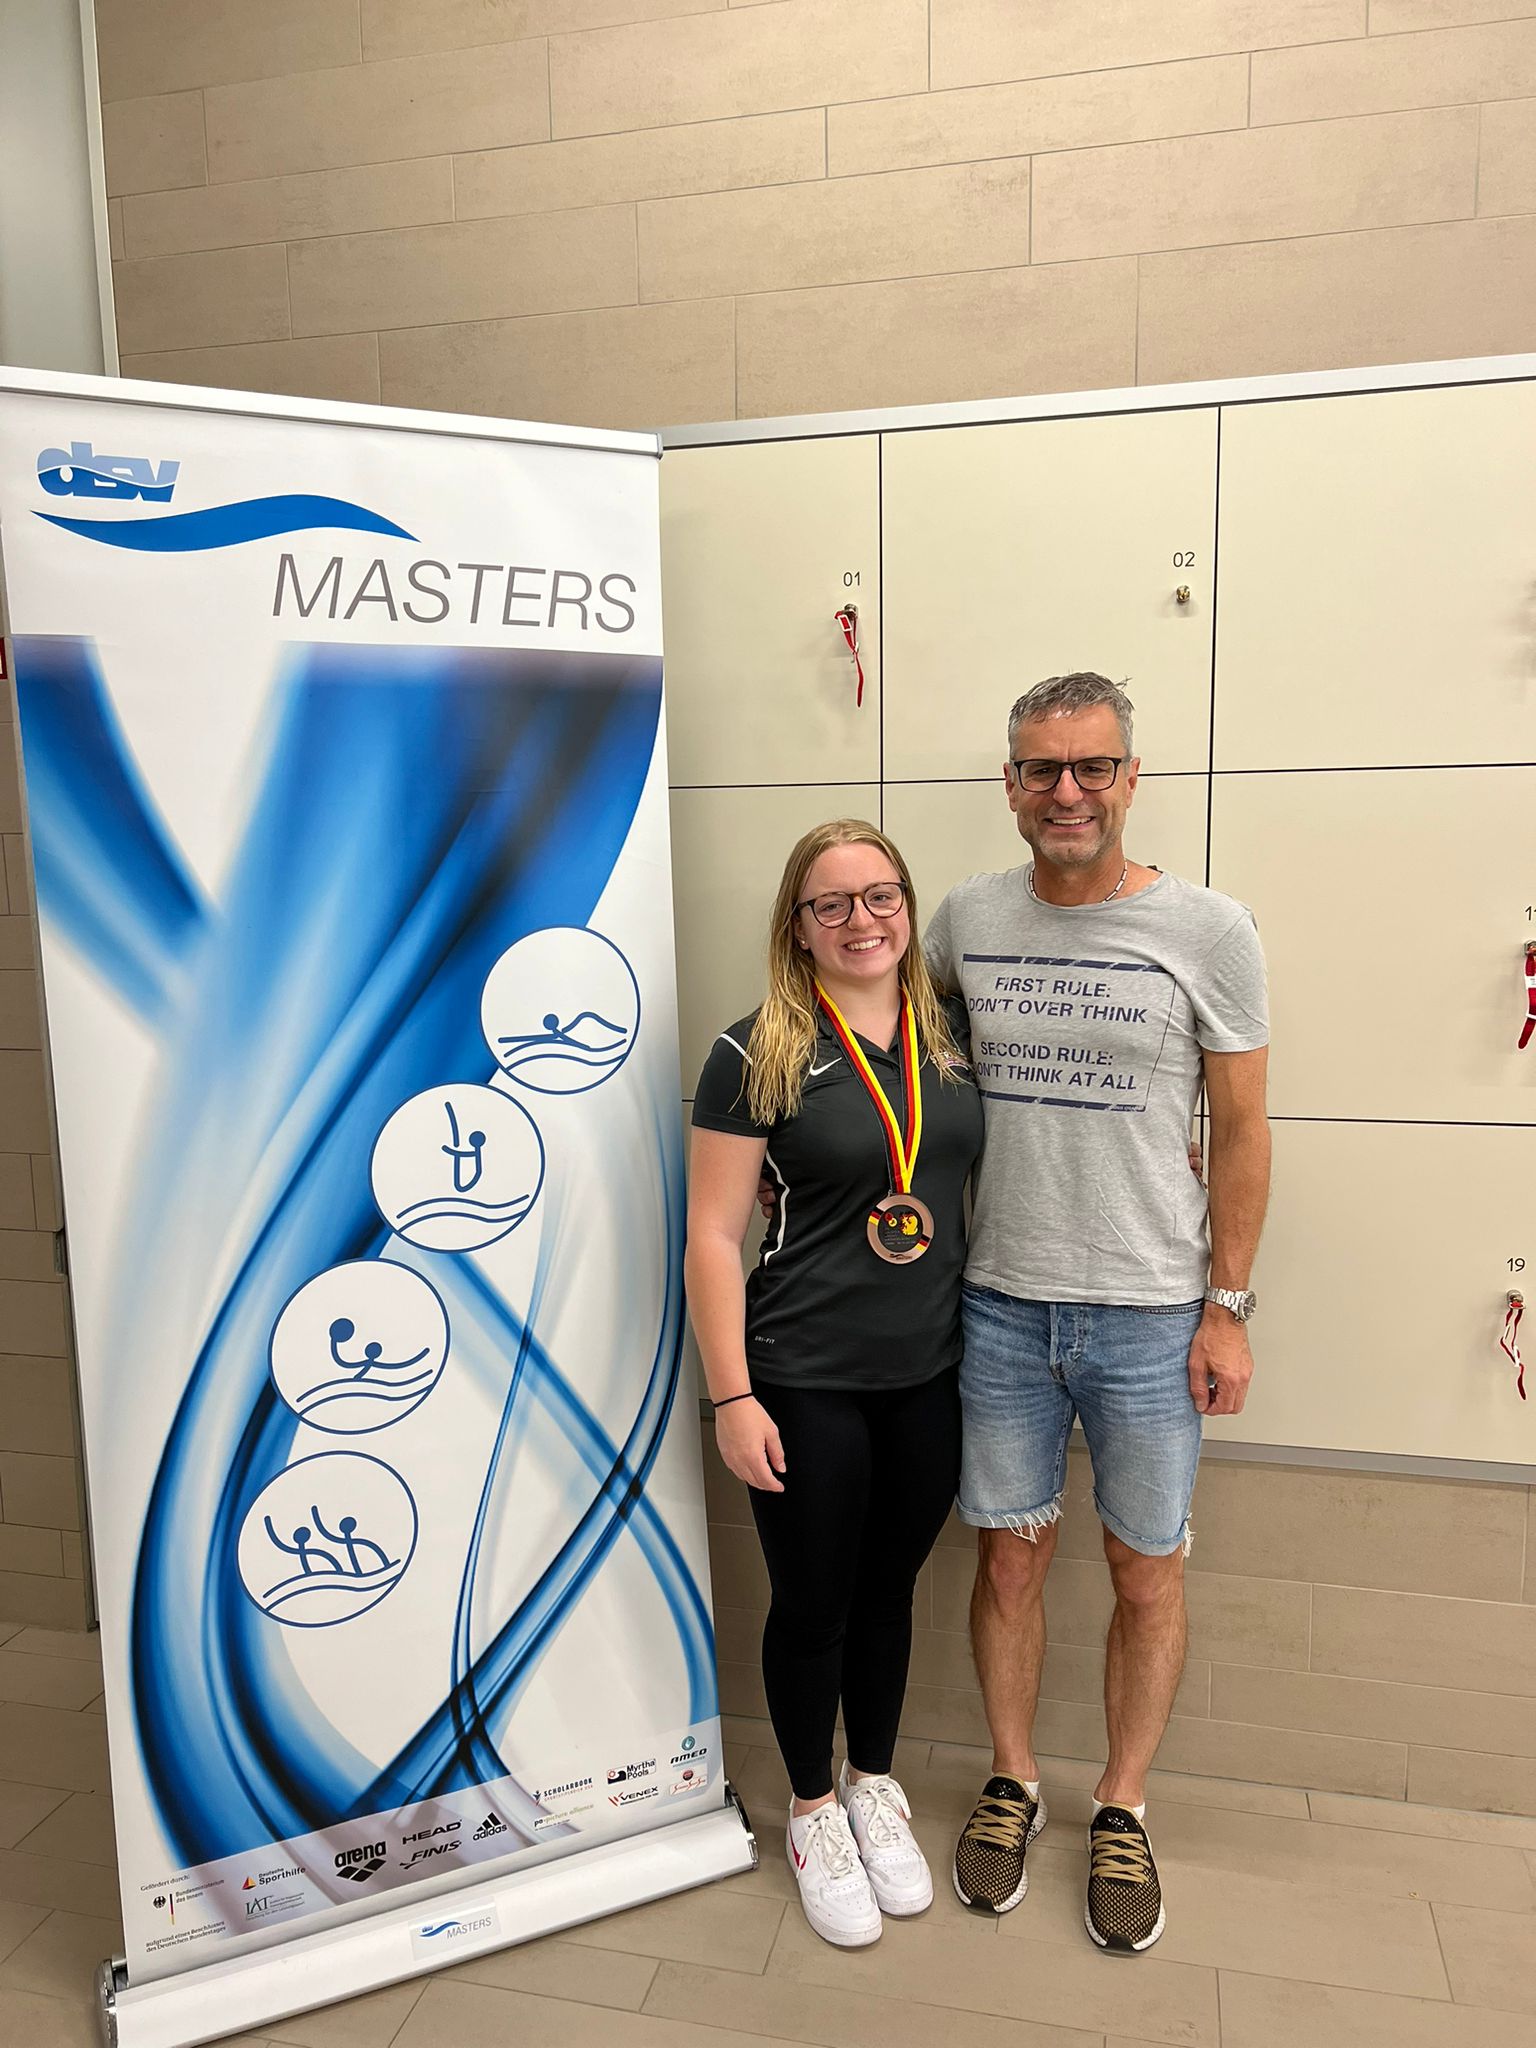 Laetitia und Gilbert Bouc starten bei den Deutschen Meisterschaften der Masters in Dresden